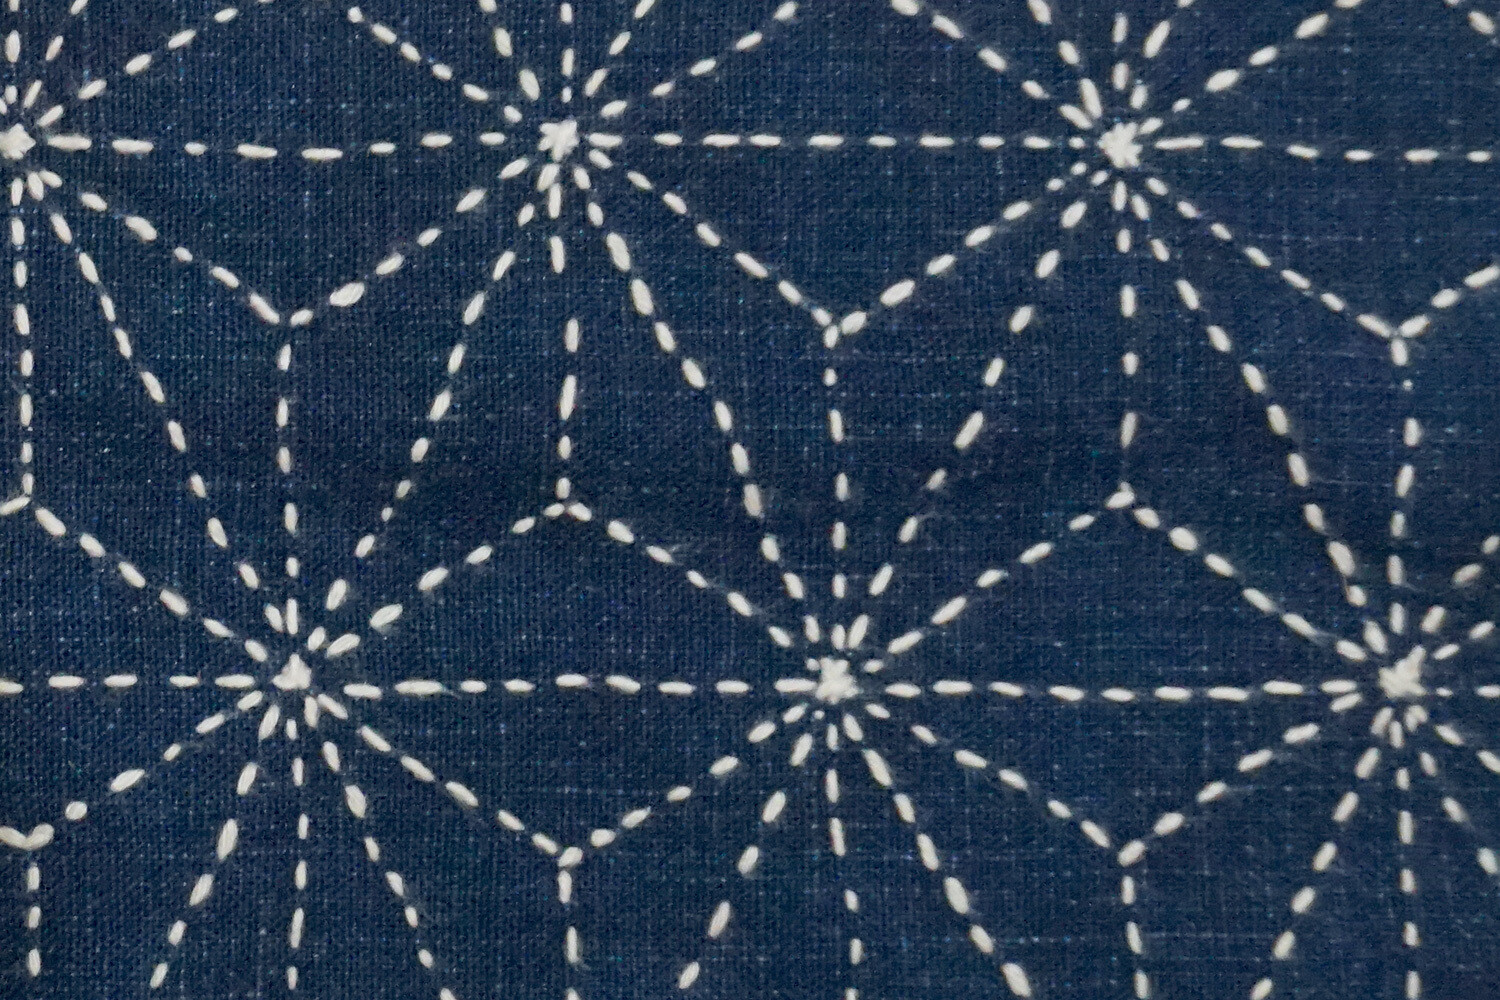 Asanoha Sashiko Stitched Fabric 081501 | Summer Sale Deal!